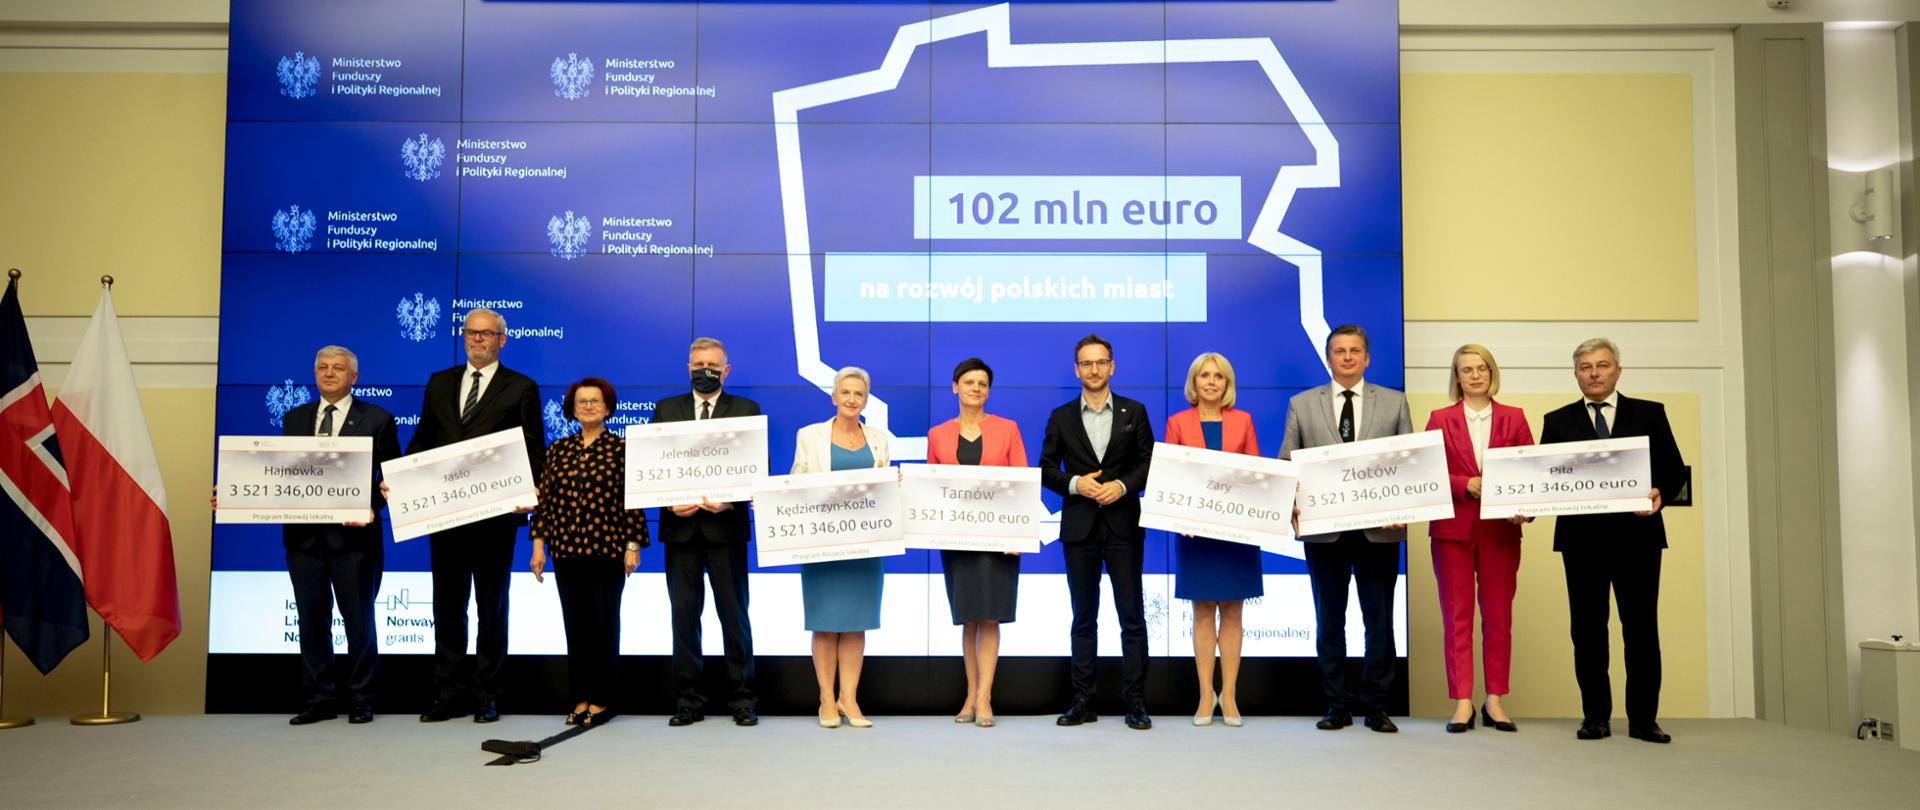 Zdjęcie grupowe przedstawiające ministra Waldemara Budę, oraz 8 włodarzy miast z czekami o wartości 3,5 mln euro.